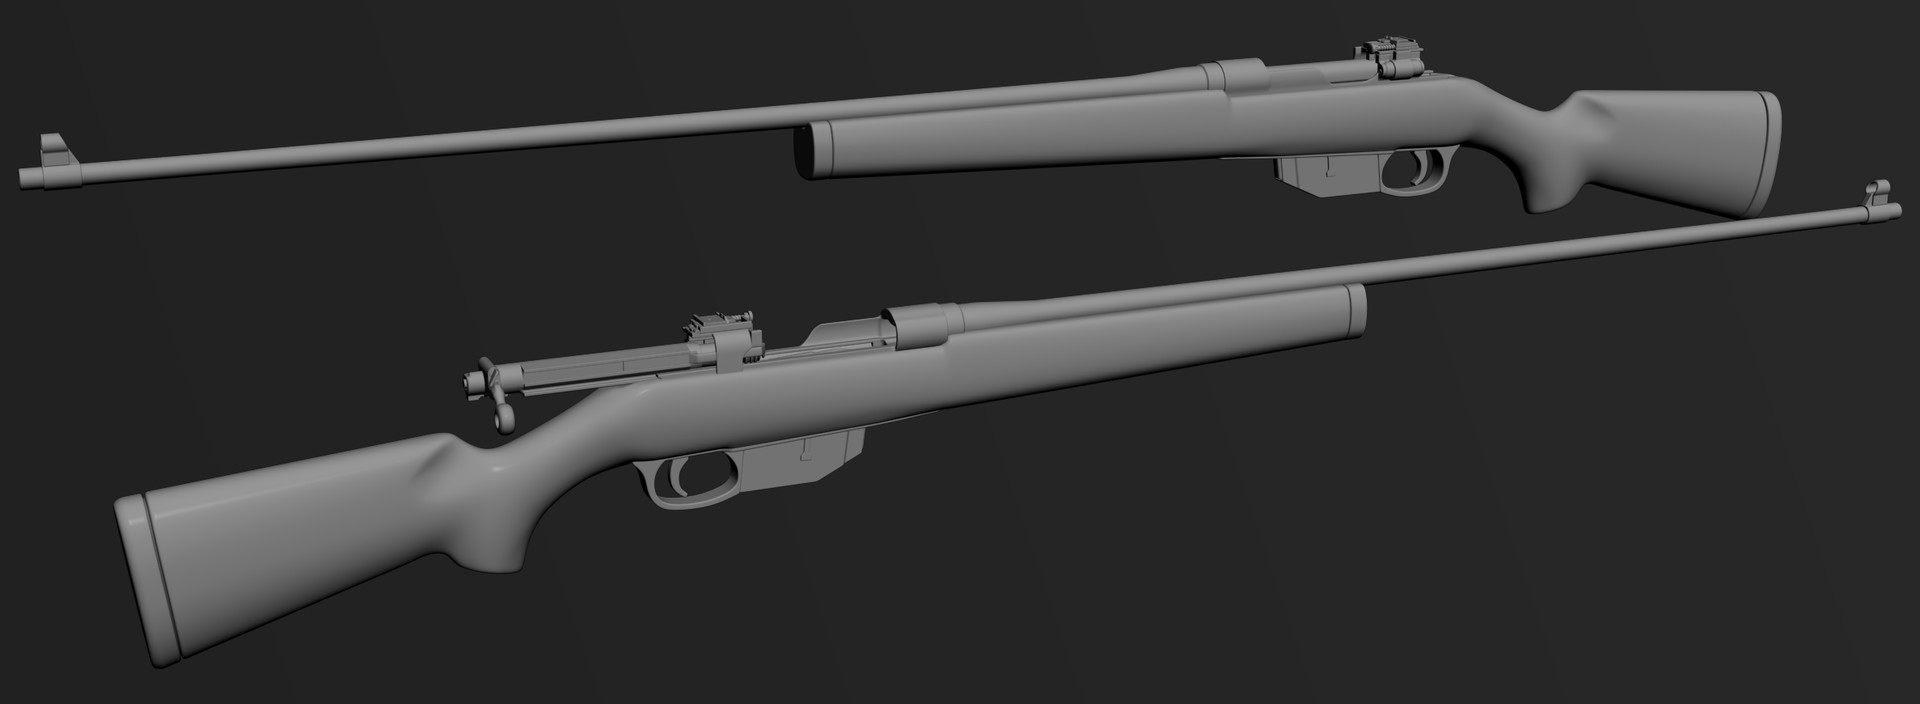 Firearms - Ross Rifle, Sniper MK III